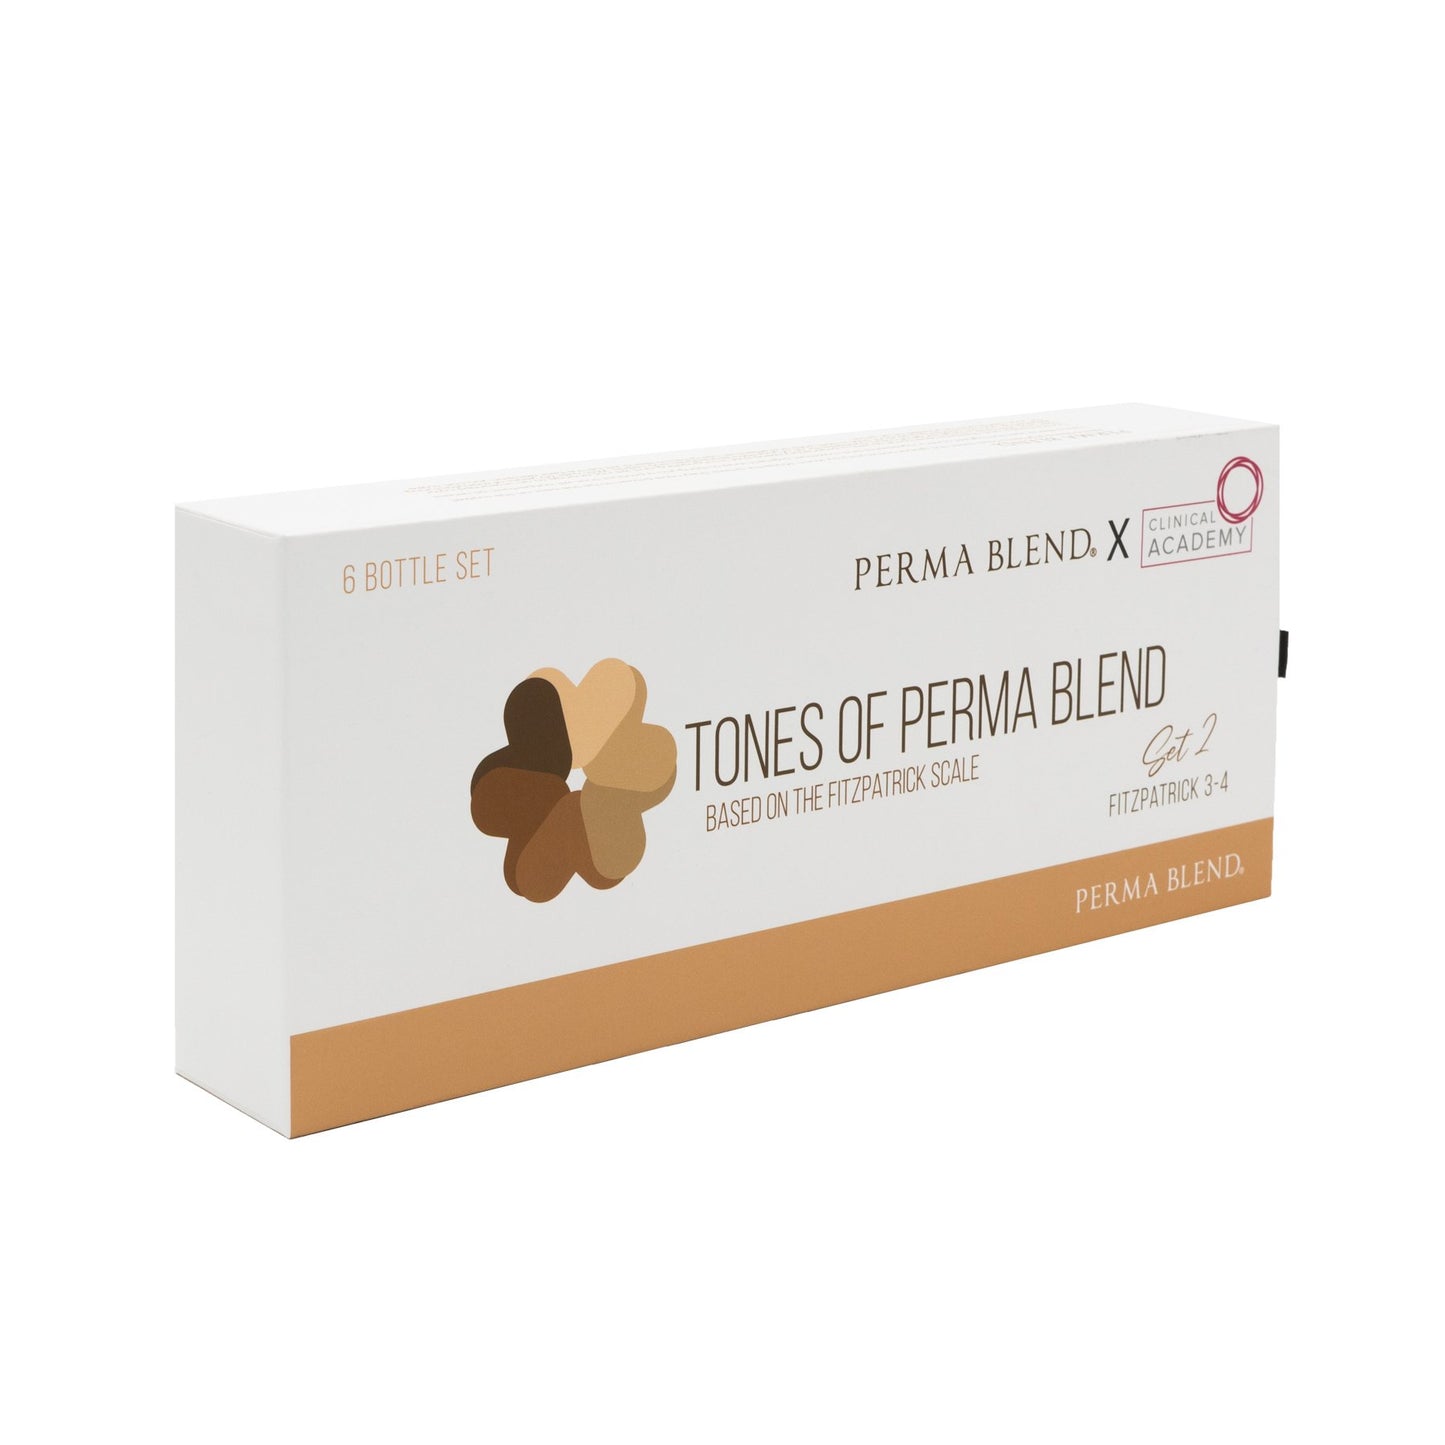 Tones of Perma Blend Set Fitz 3-4